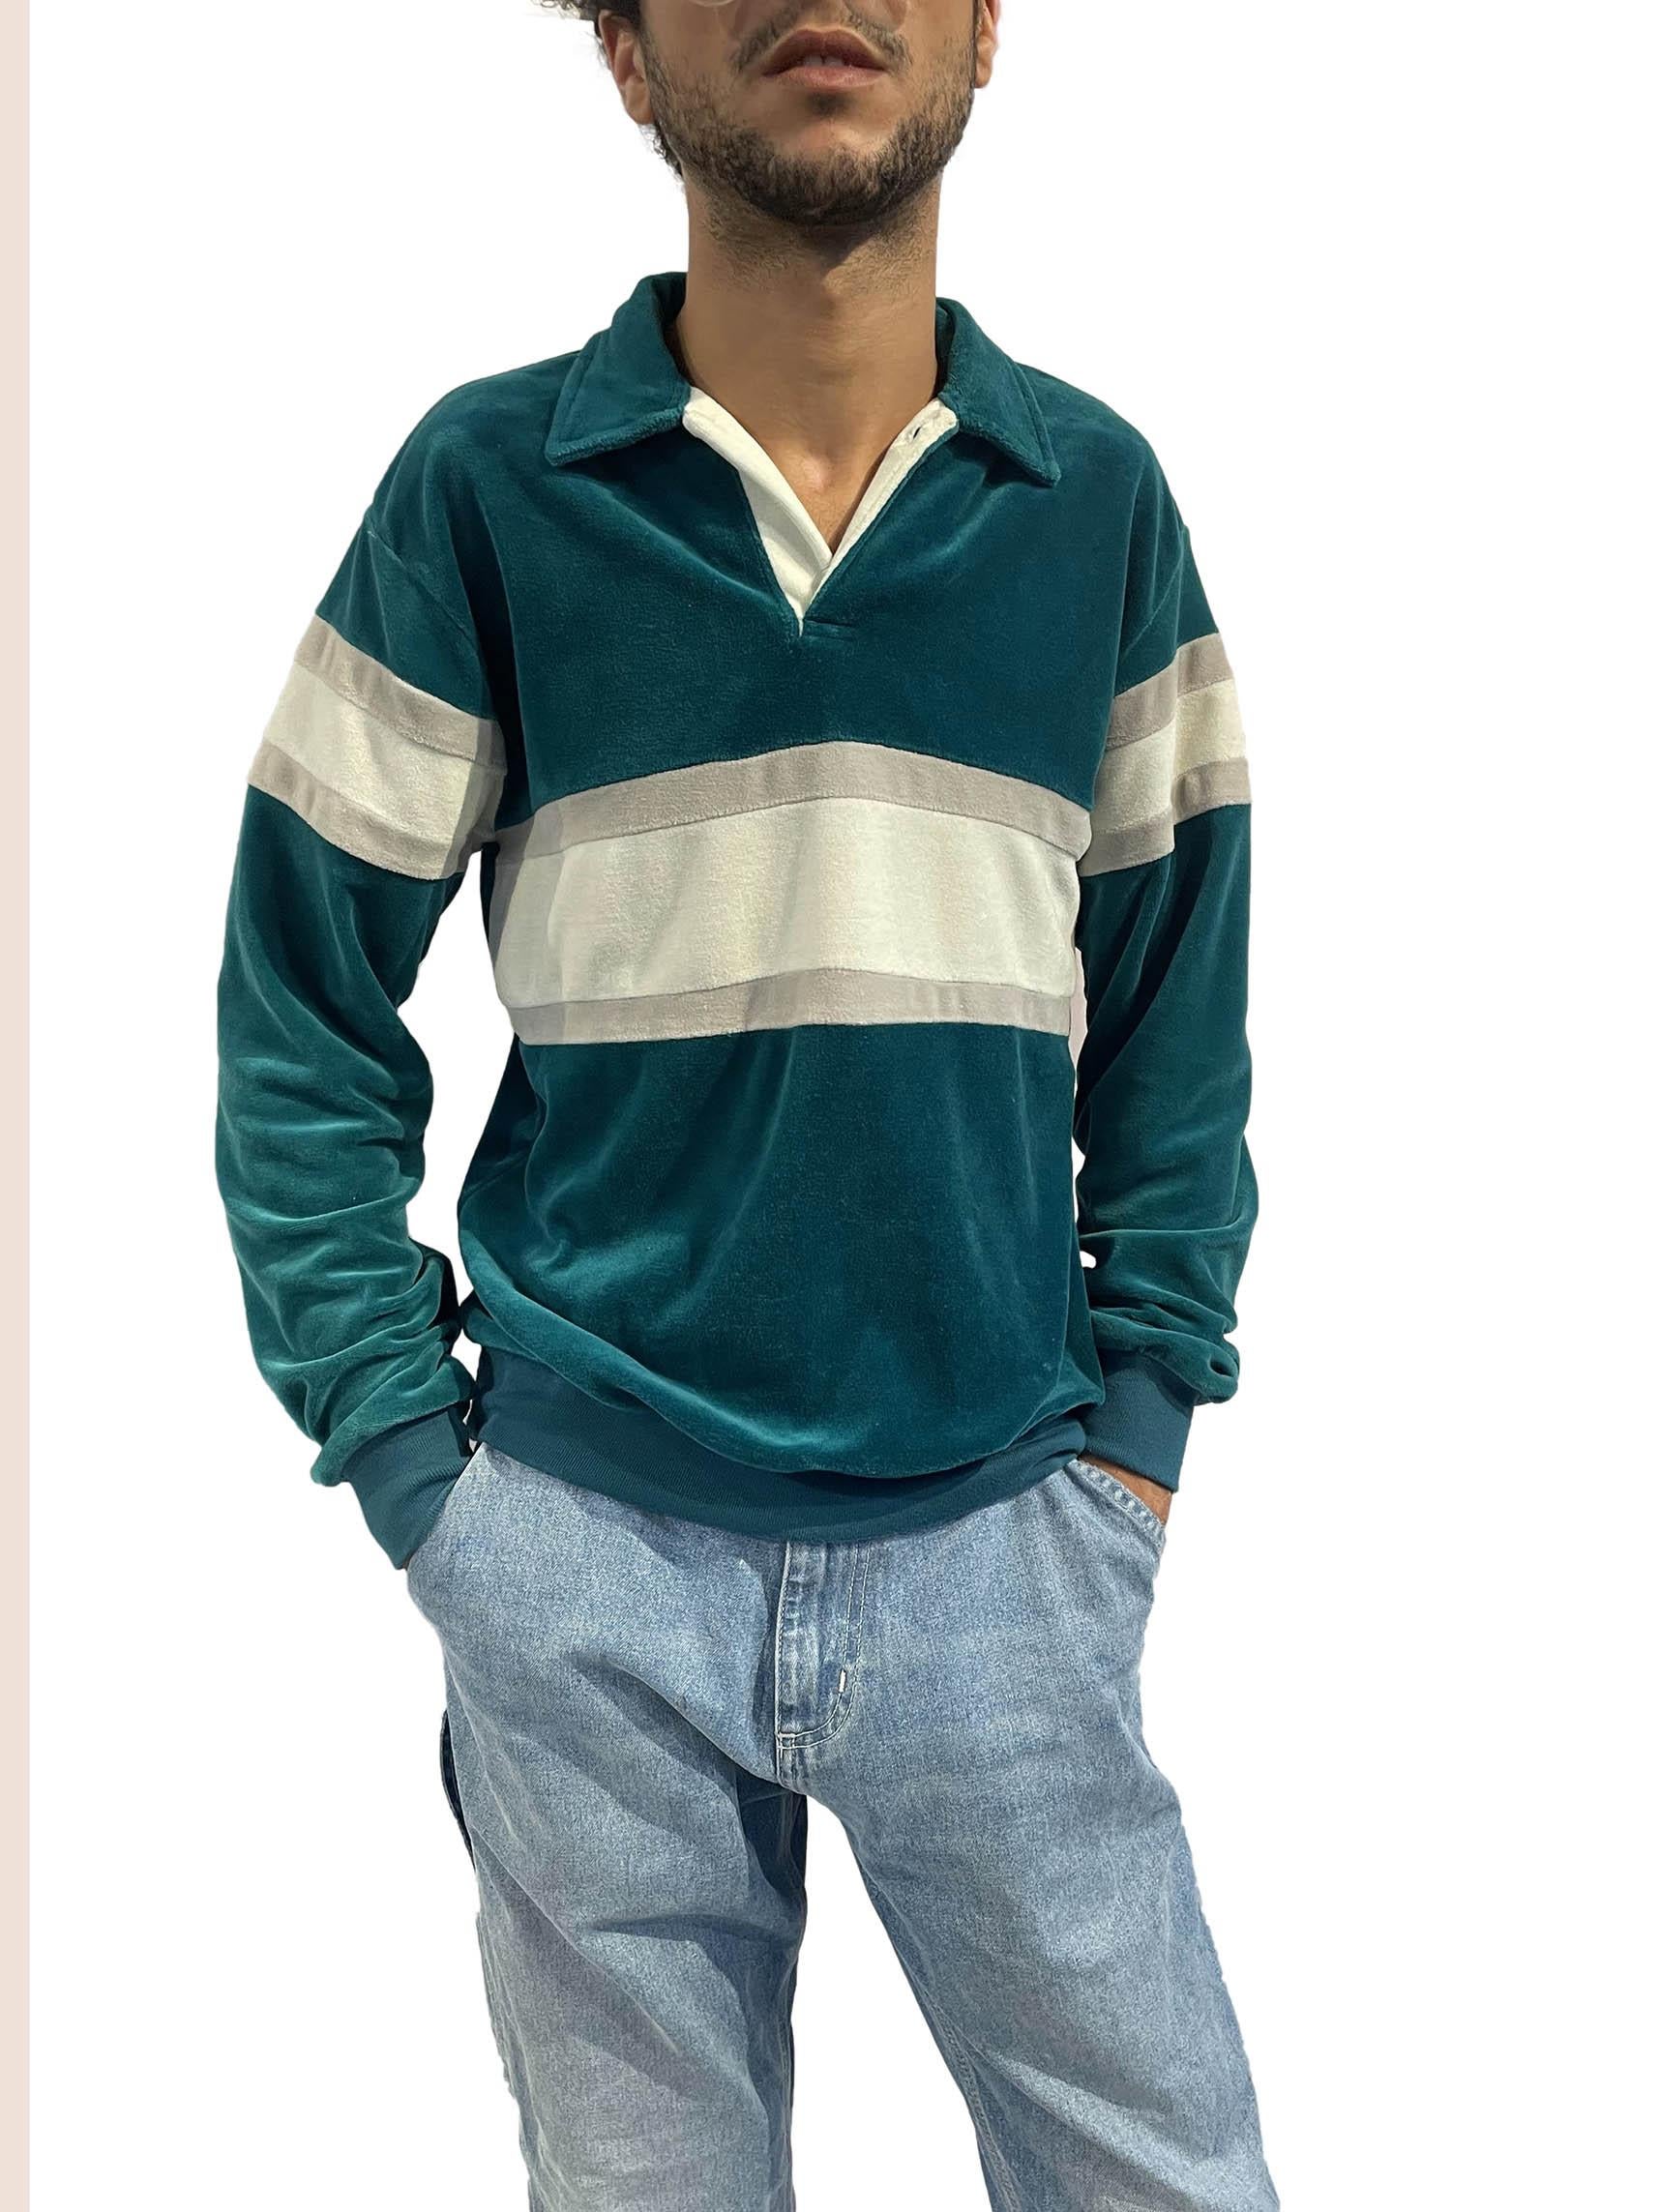 Men's 1980S Teal & White Stripe Poly/Cotton Velvet Pull Over Sweatshirt